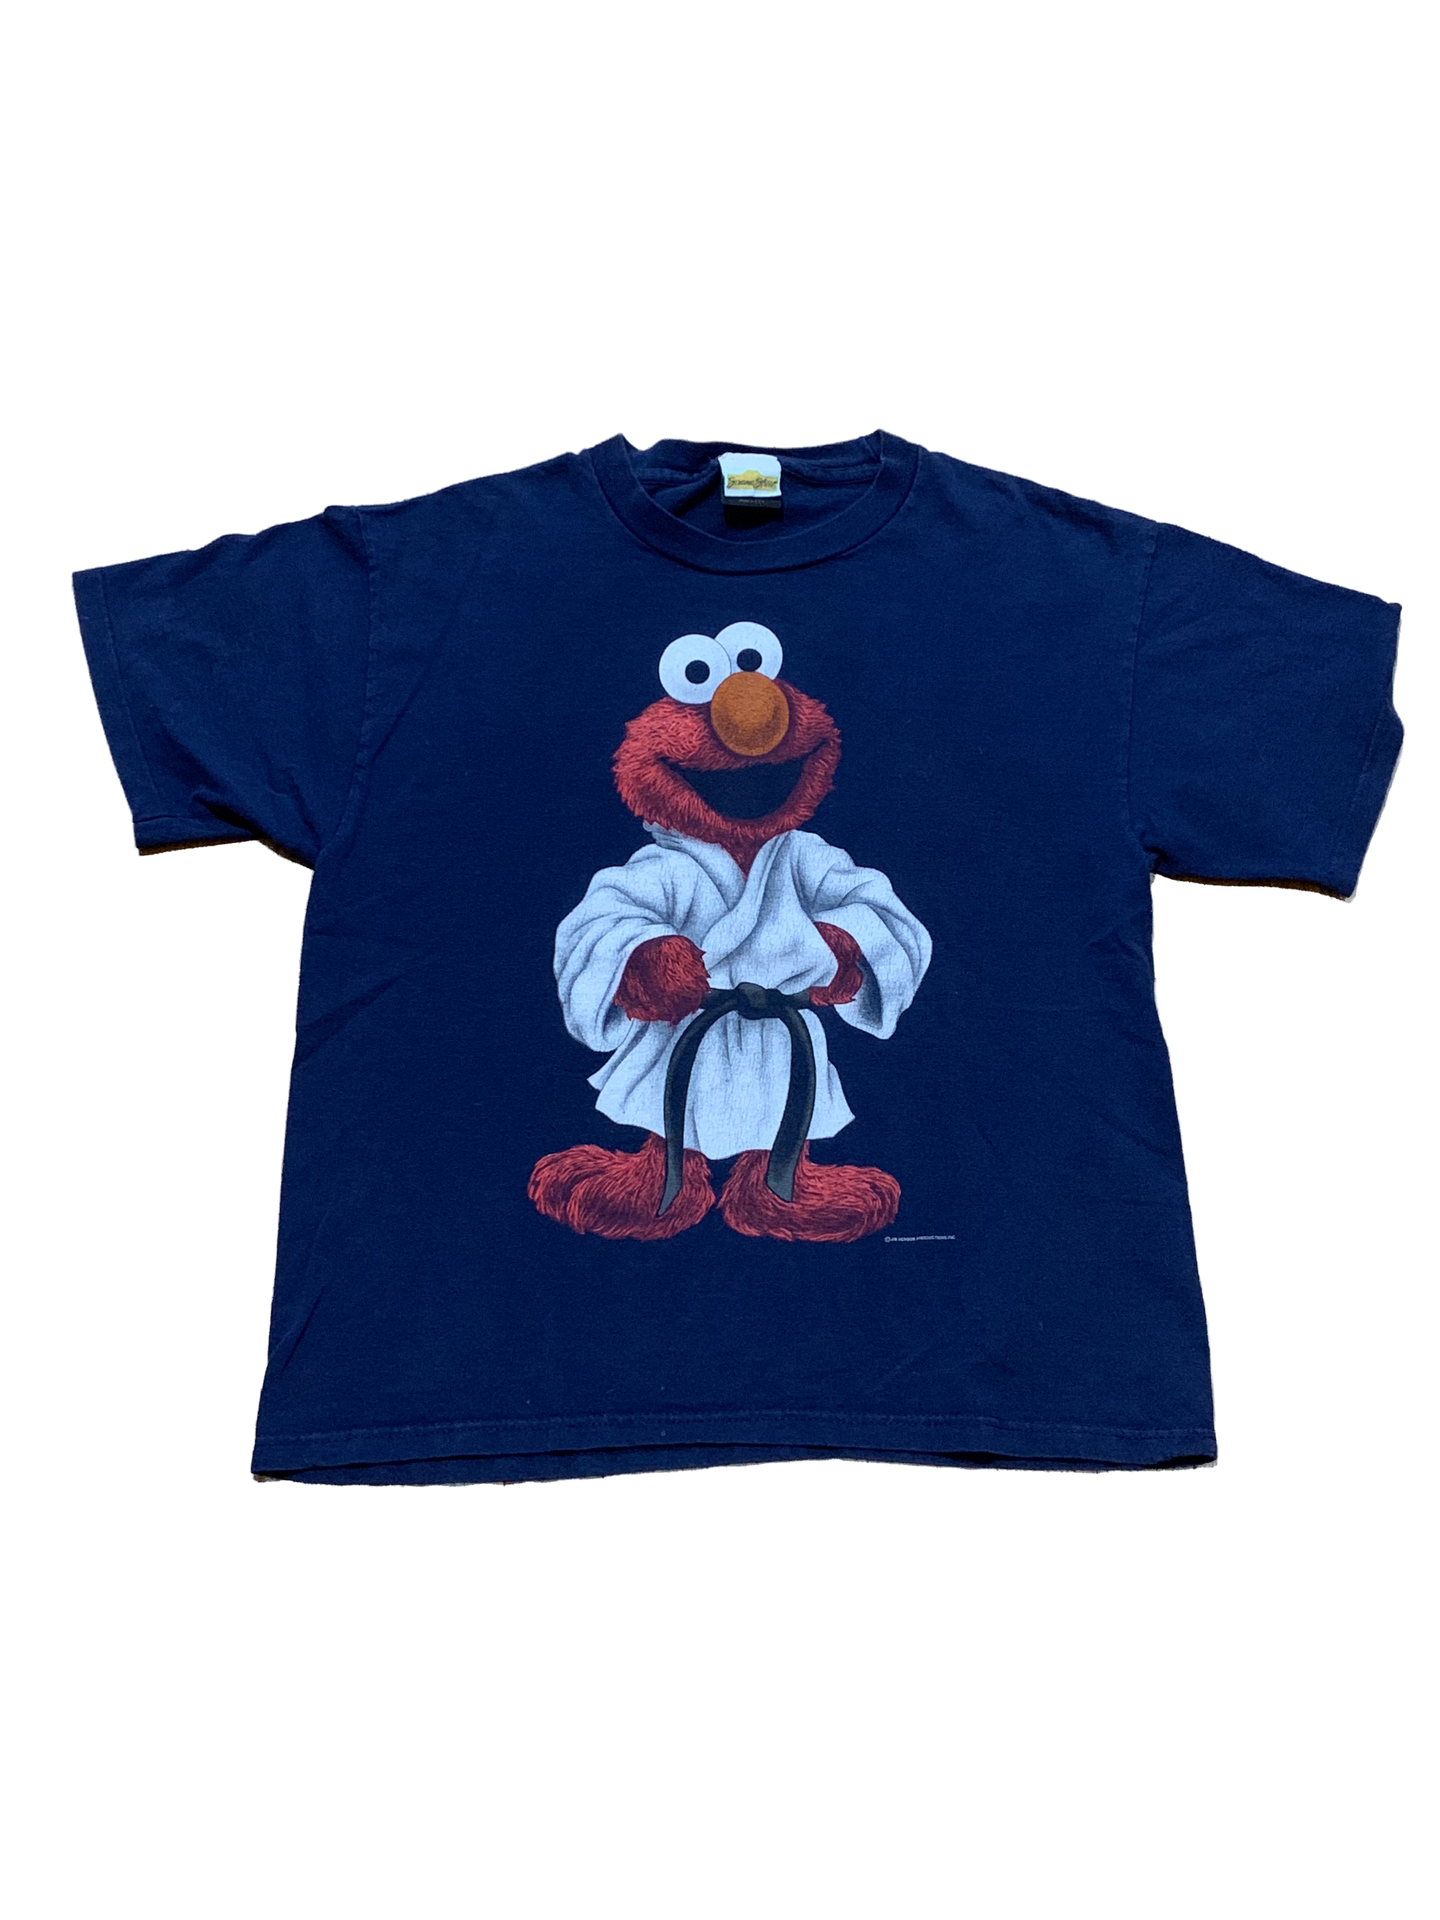 Vintage Elmo Karate Tee